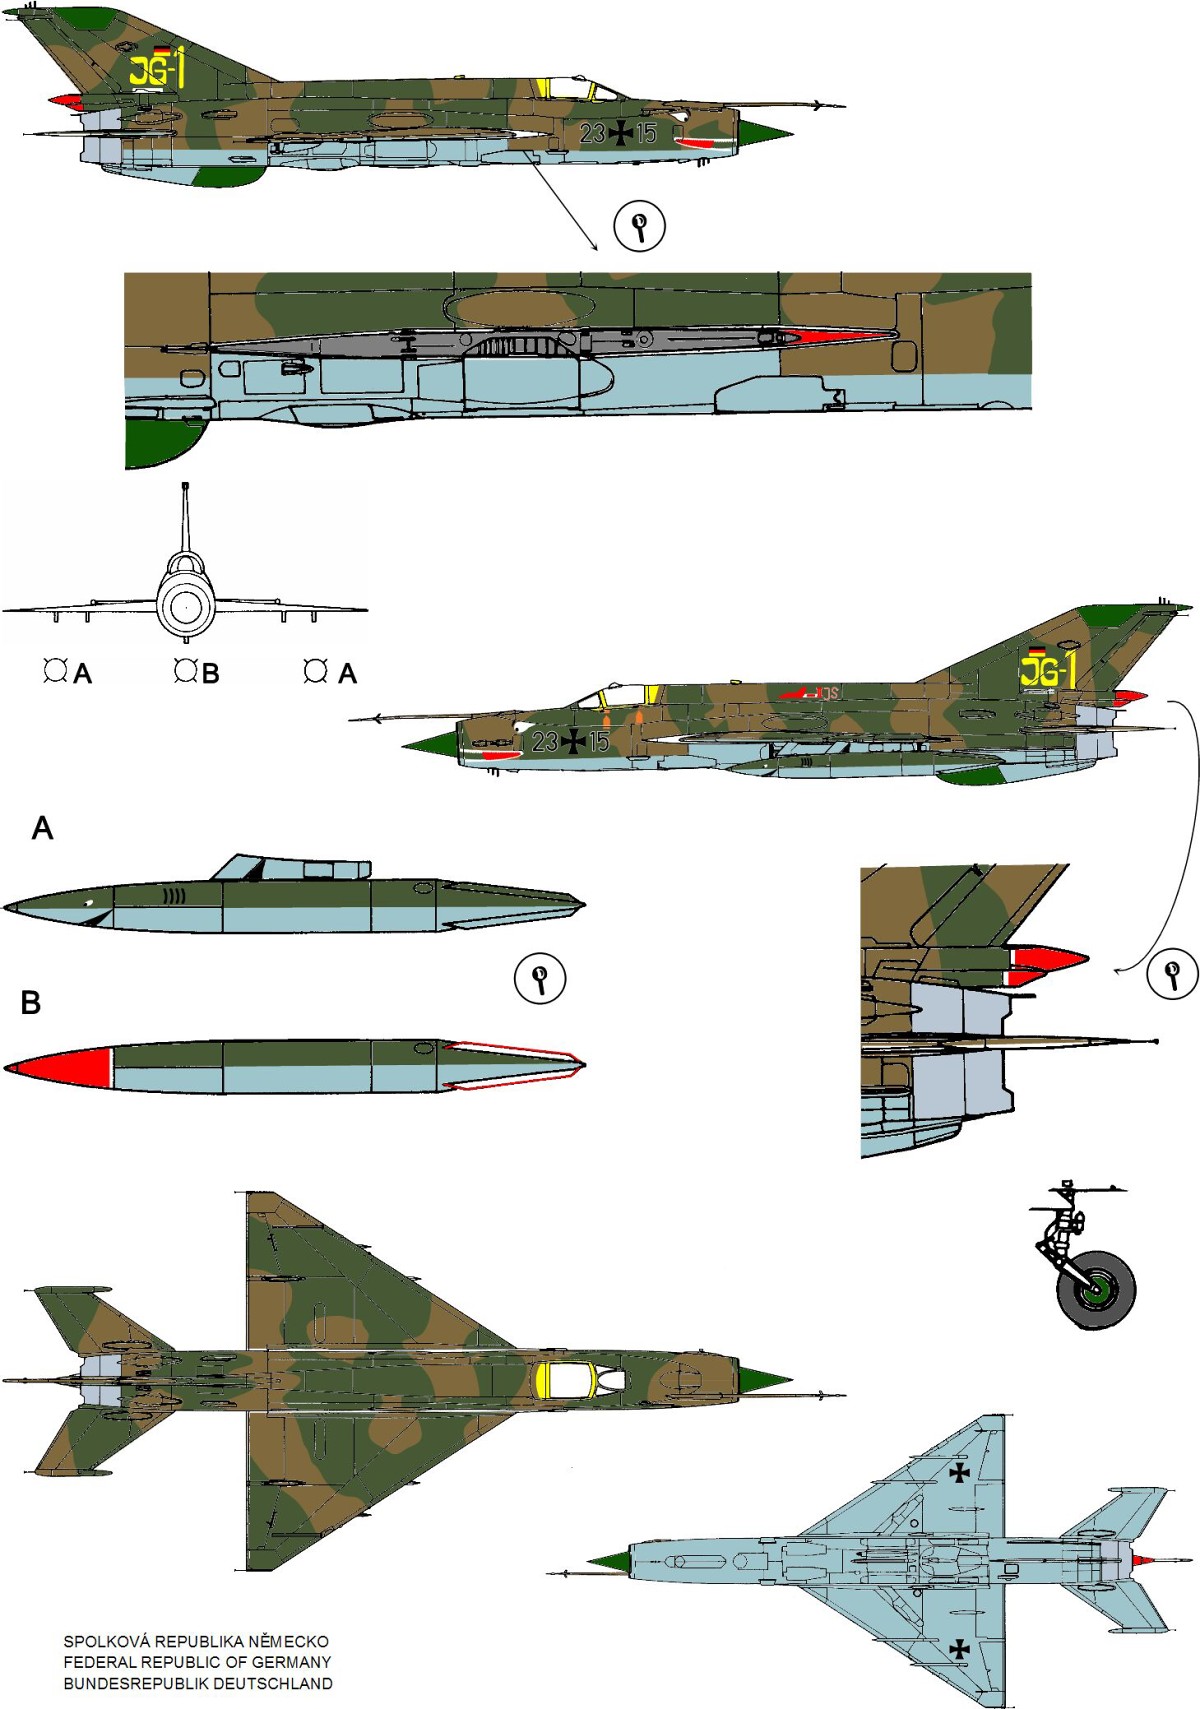 Mikoyan MiG-21MF